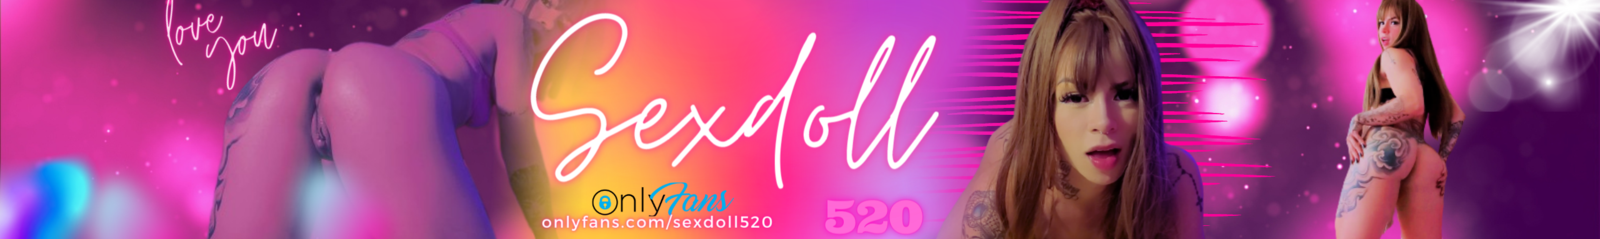 Sexdoll520